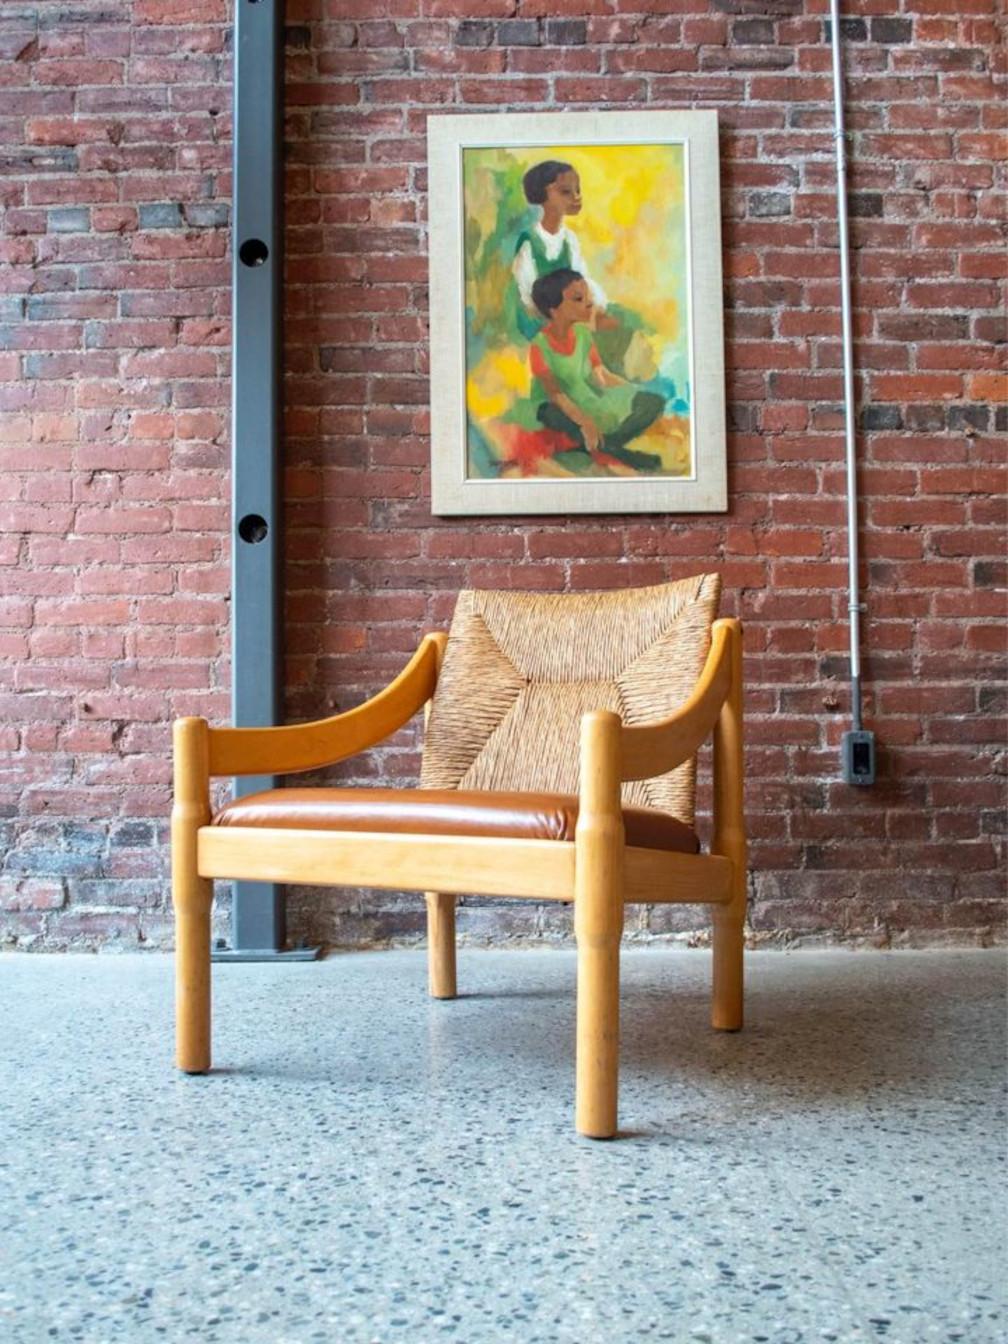 Notre salle d'exposition accueille une chaise longue originale conçue par Vico Magistretti. Cette pièce unique se compose d'un cadre en hêtre robuste, d'un dossier en rotin travaillé de manière complexe et d'une assise en cuir neuf impeccable - un